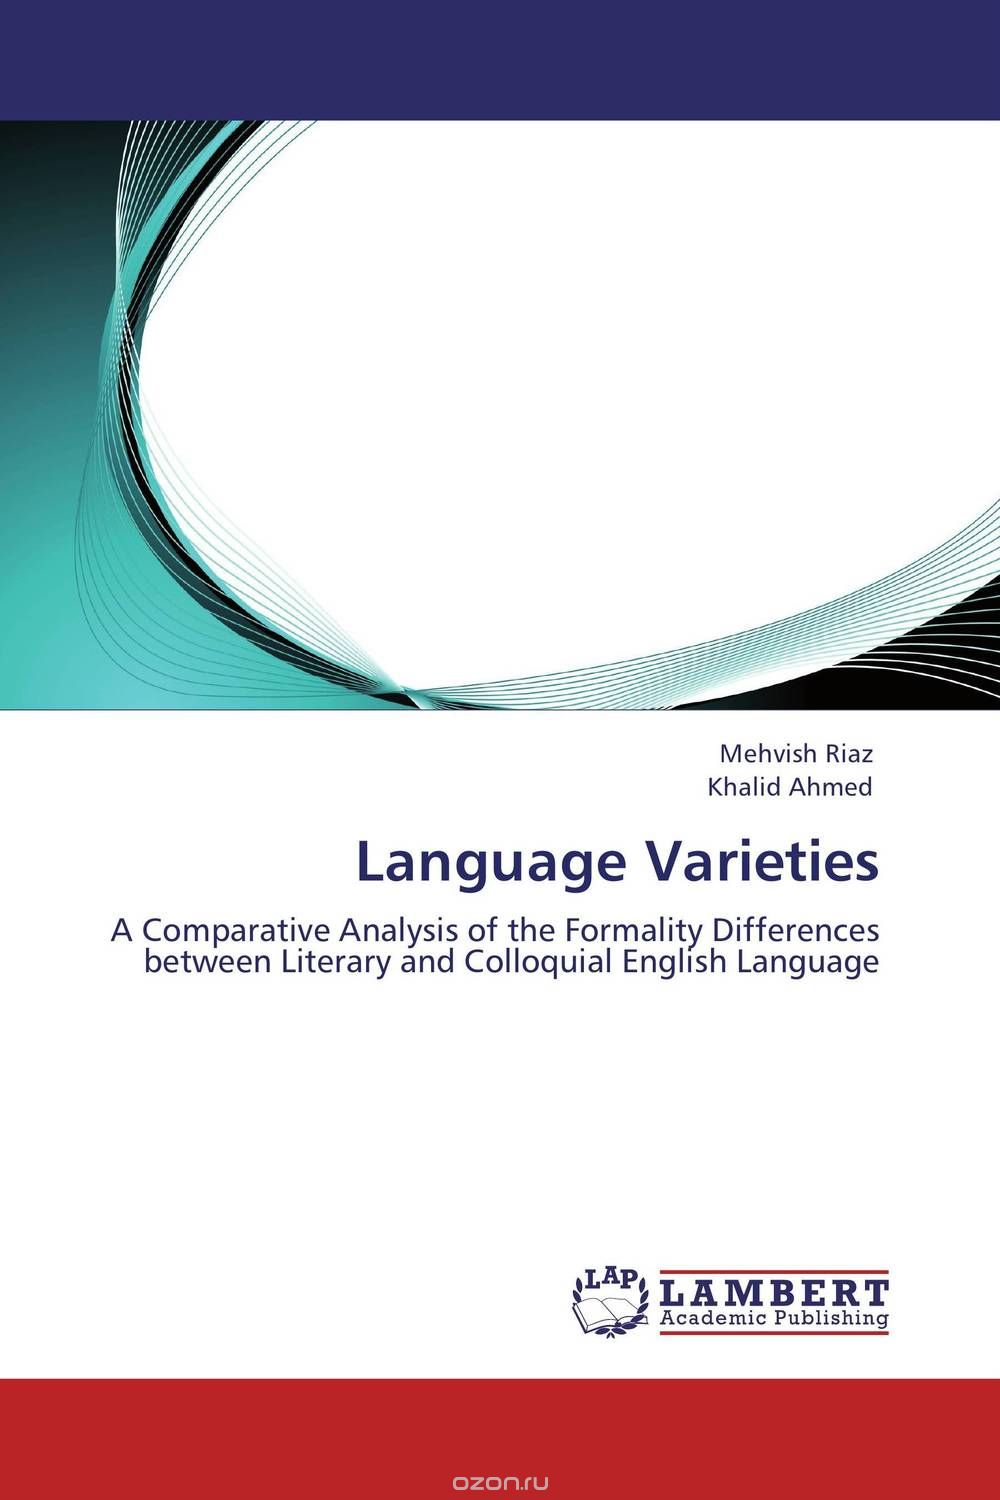 Скачать книгу "Language Varieties"